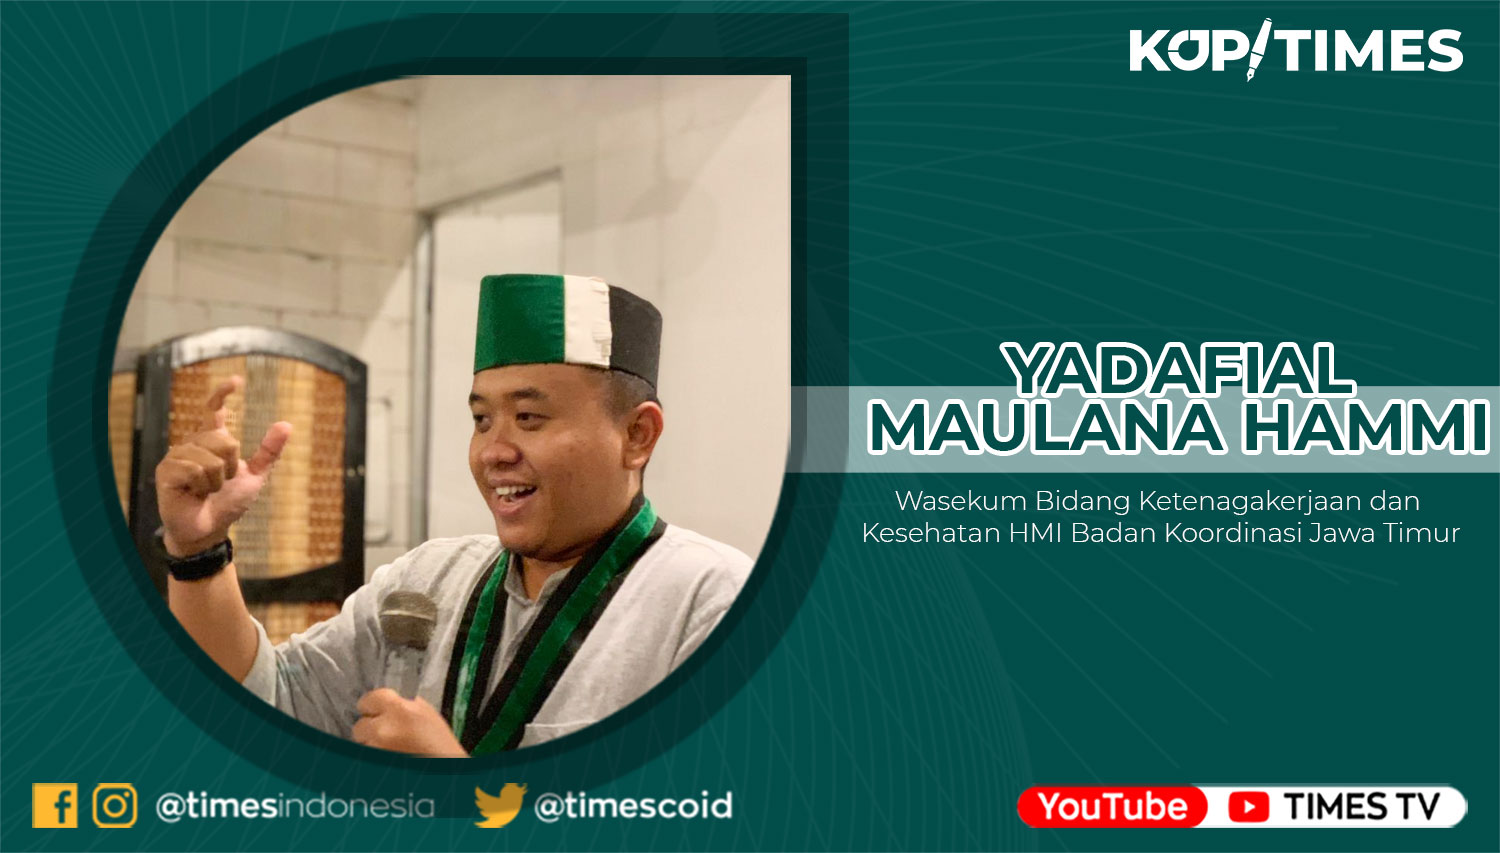 Yadafial Maulana Hammi, Wasekum Bidang Ketenagakerjaan dan Kesehatan HMI Badan Koordinasi Jawa Timur.